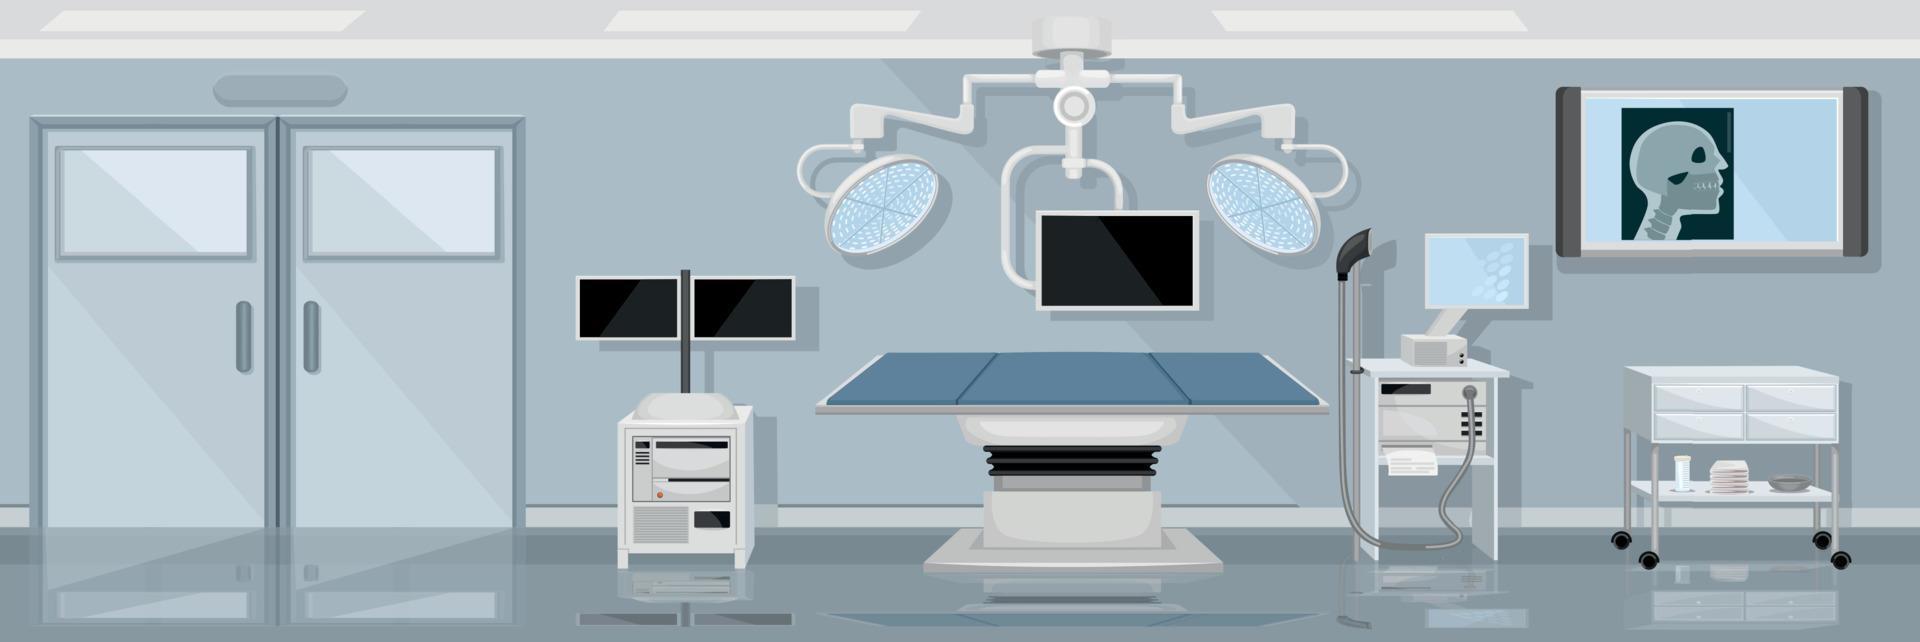 Medical Operating Room Illustration vector